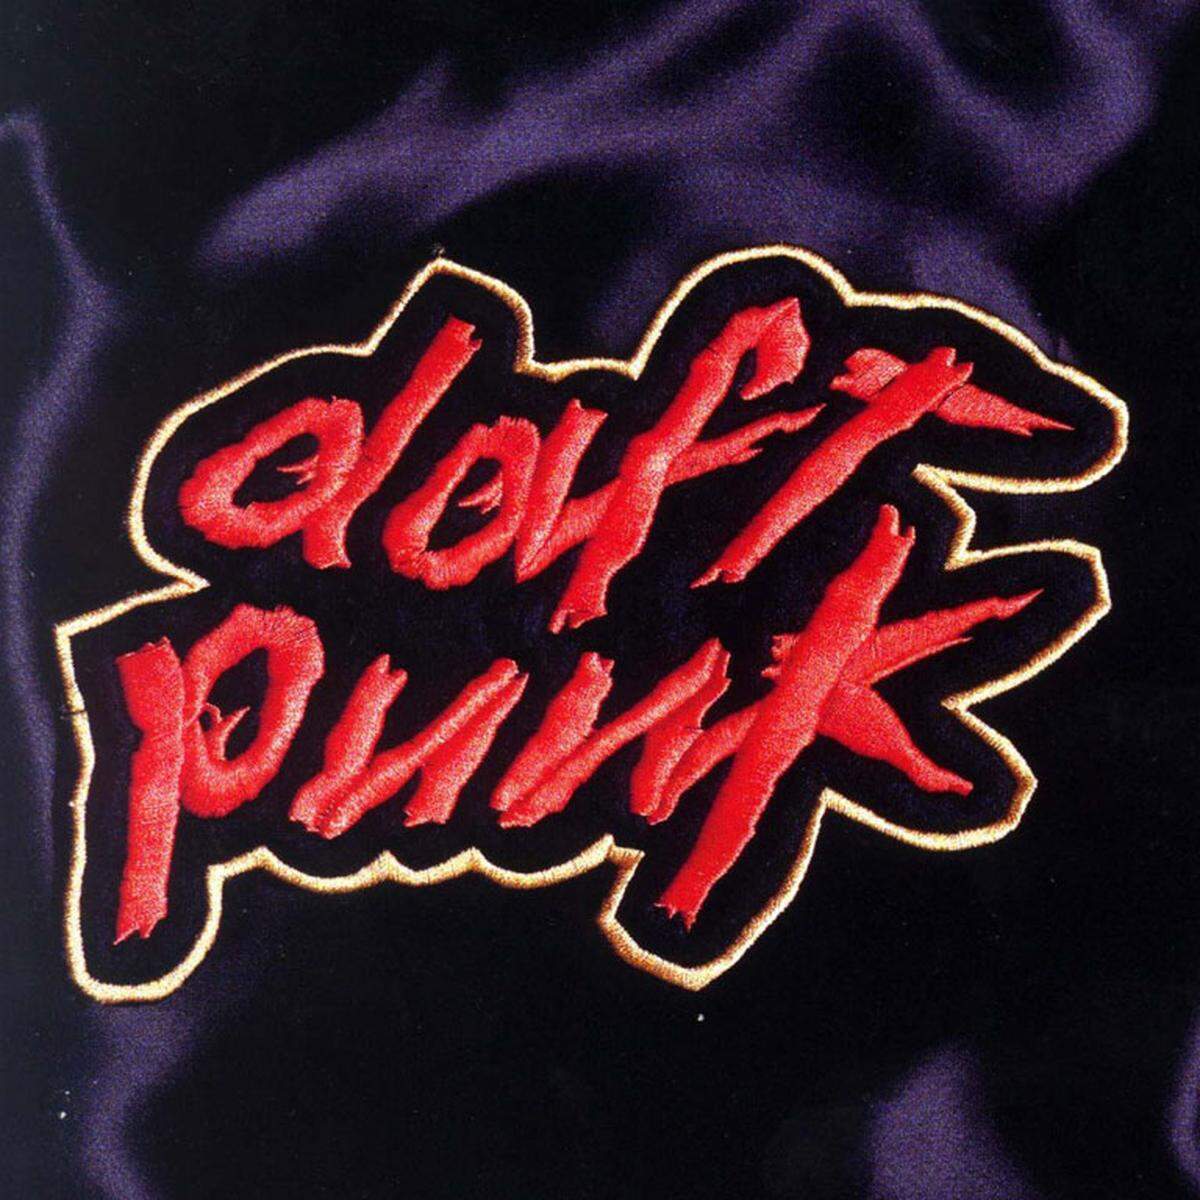 "Homework" (1997), das Debüt-Album des französischen Duos Daft Punk, löste nicht nur einen House-Boom aus, es war auch wegweisend für den Electro der 2000er Jahre.